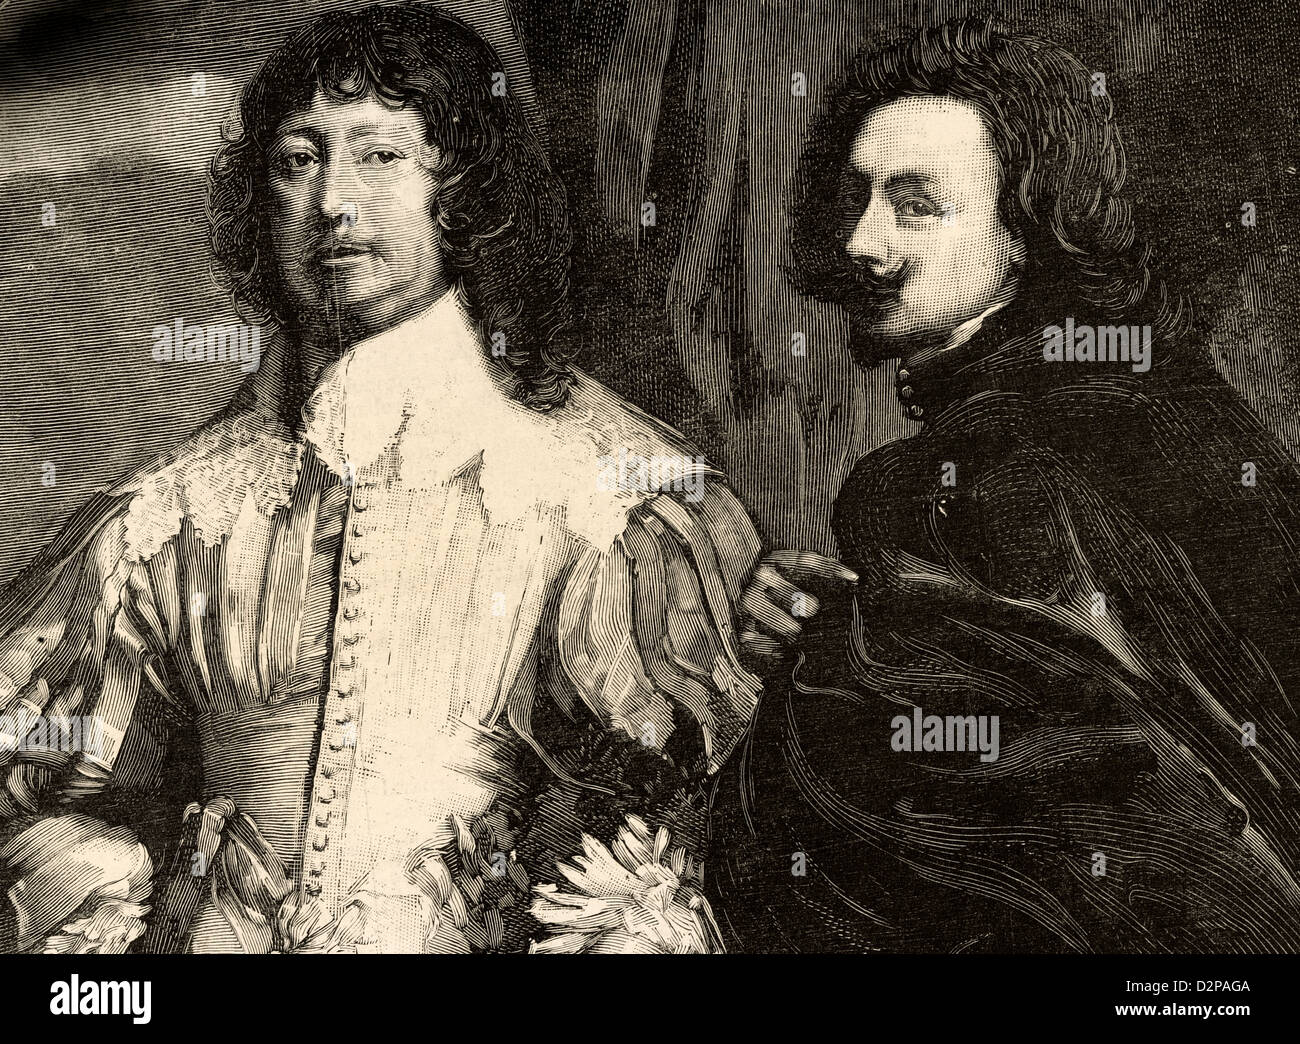 Peintre flamand Anthony Van Dyck (1599-1641) et homme politique anglais Lord John Digby (1580-1653), 1 Comte de Bristol. La gravure. Banque D'Images